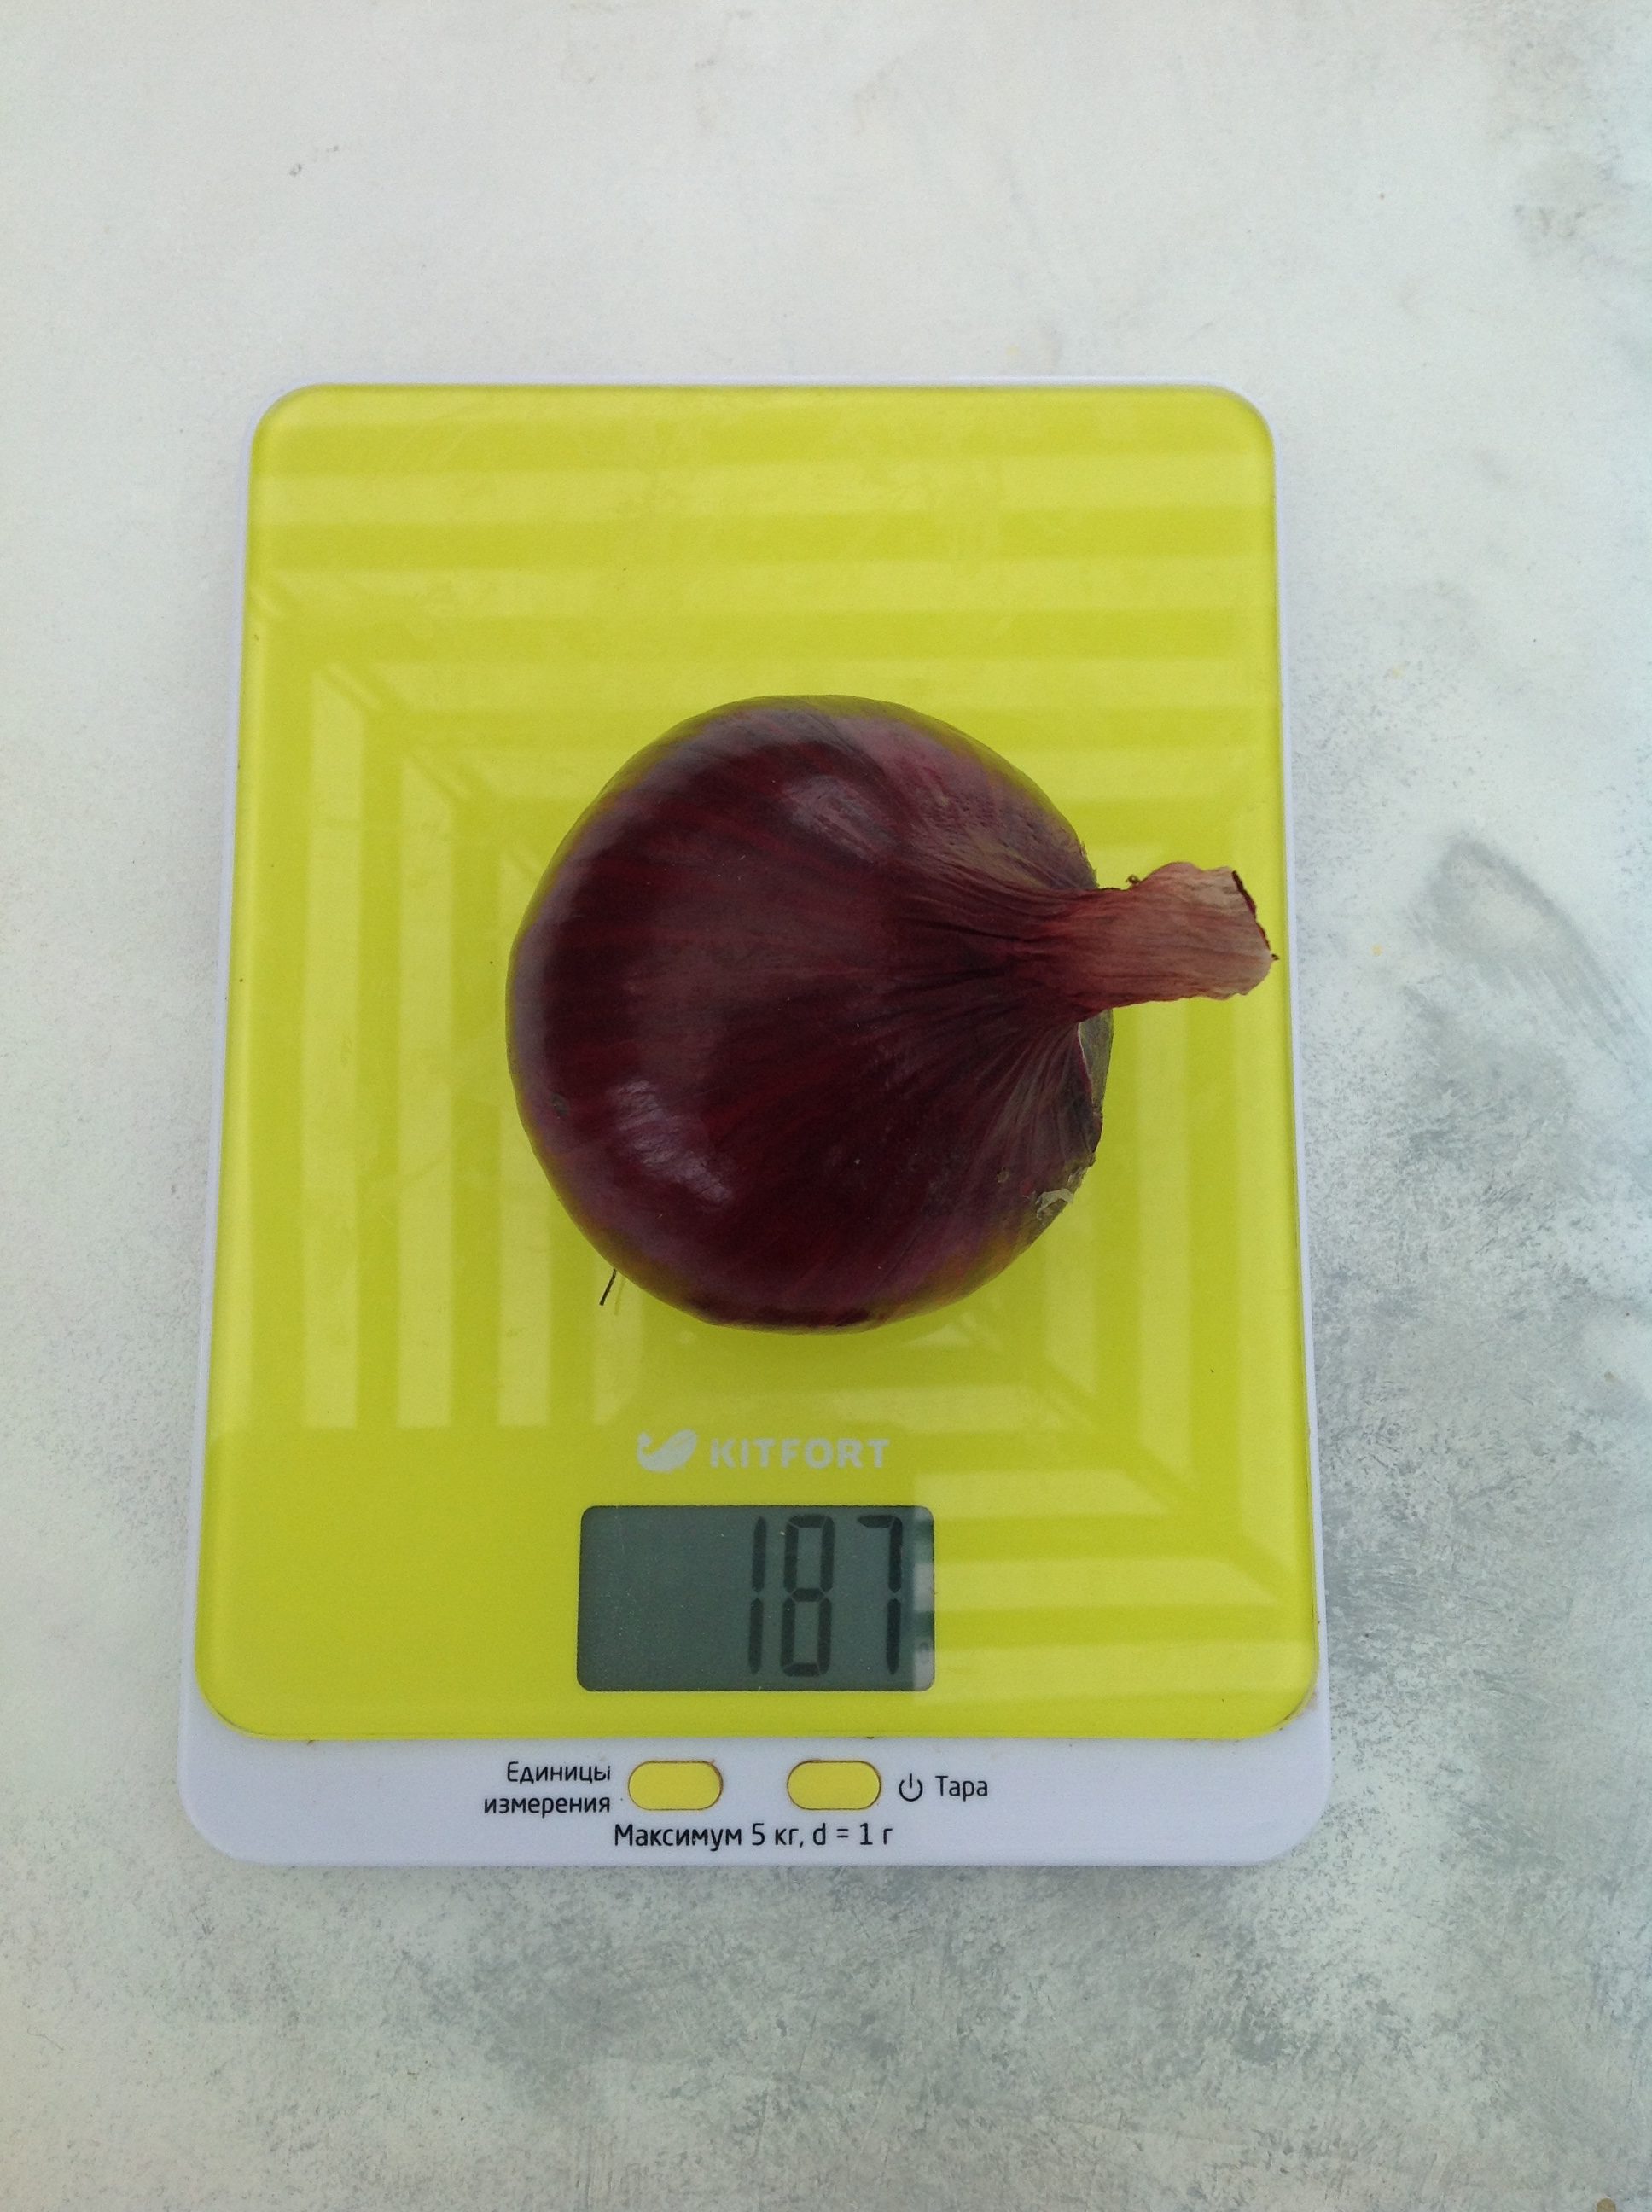 вес луковицы красной средней